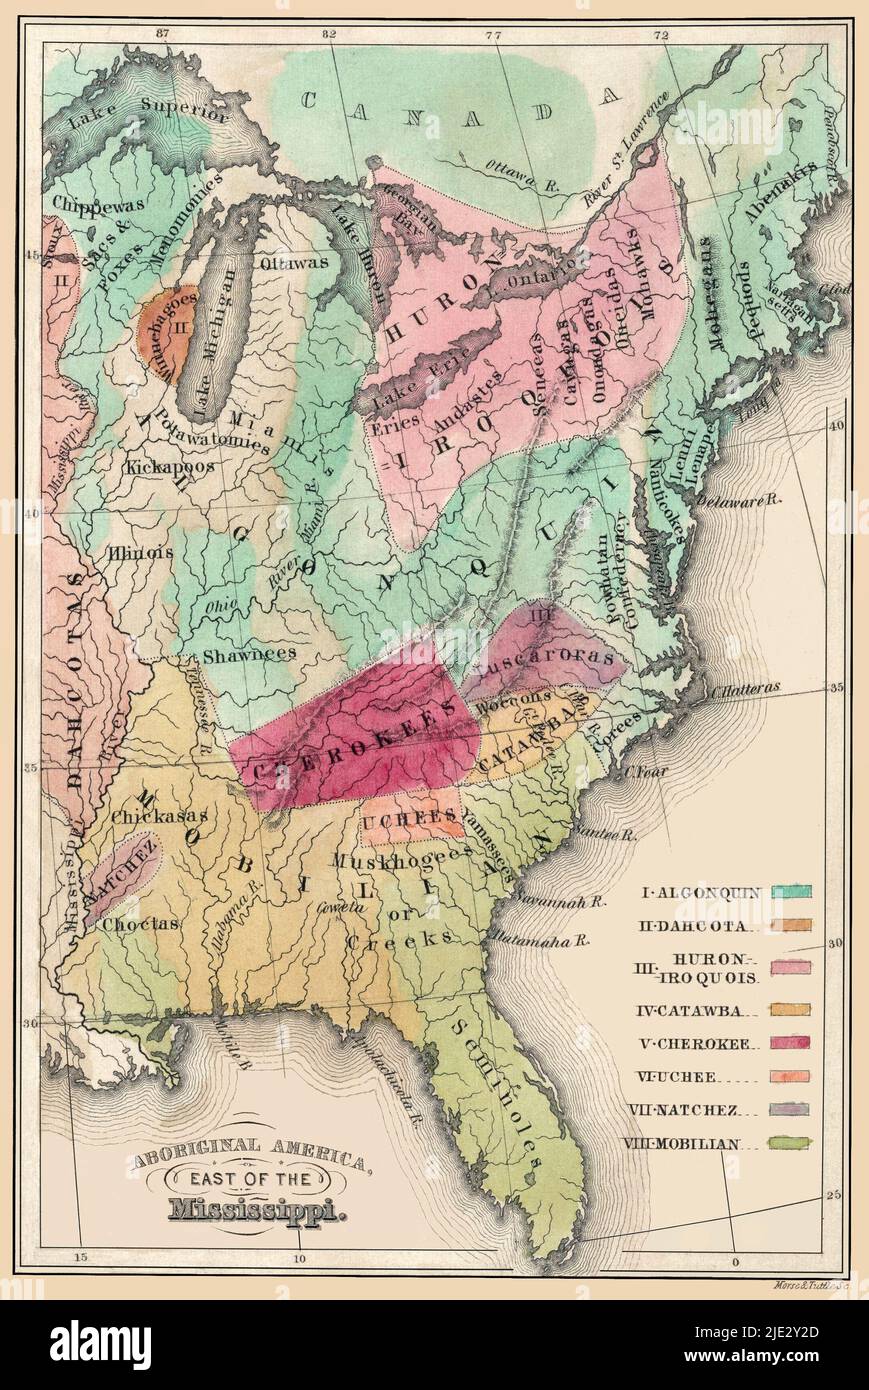 Indianerpopulationen im Osten der Vereinigten Staaten Karte eine verstärkte, restaurierte Reproduktion einer Karte der Lage der indianischen Populationen in den Vereinigten Staaten an der Ostküste. Originaltitel: Aboriginal America östlich des Mississippi. Veröffentlicht um 1849, reflektiert aber um 1600. Stockfoto